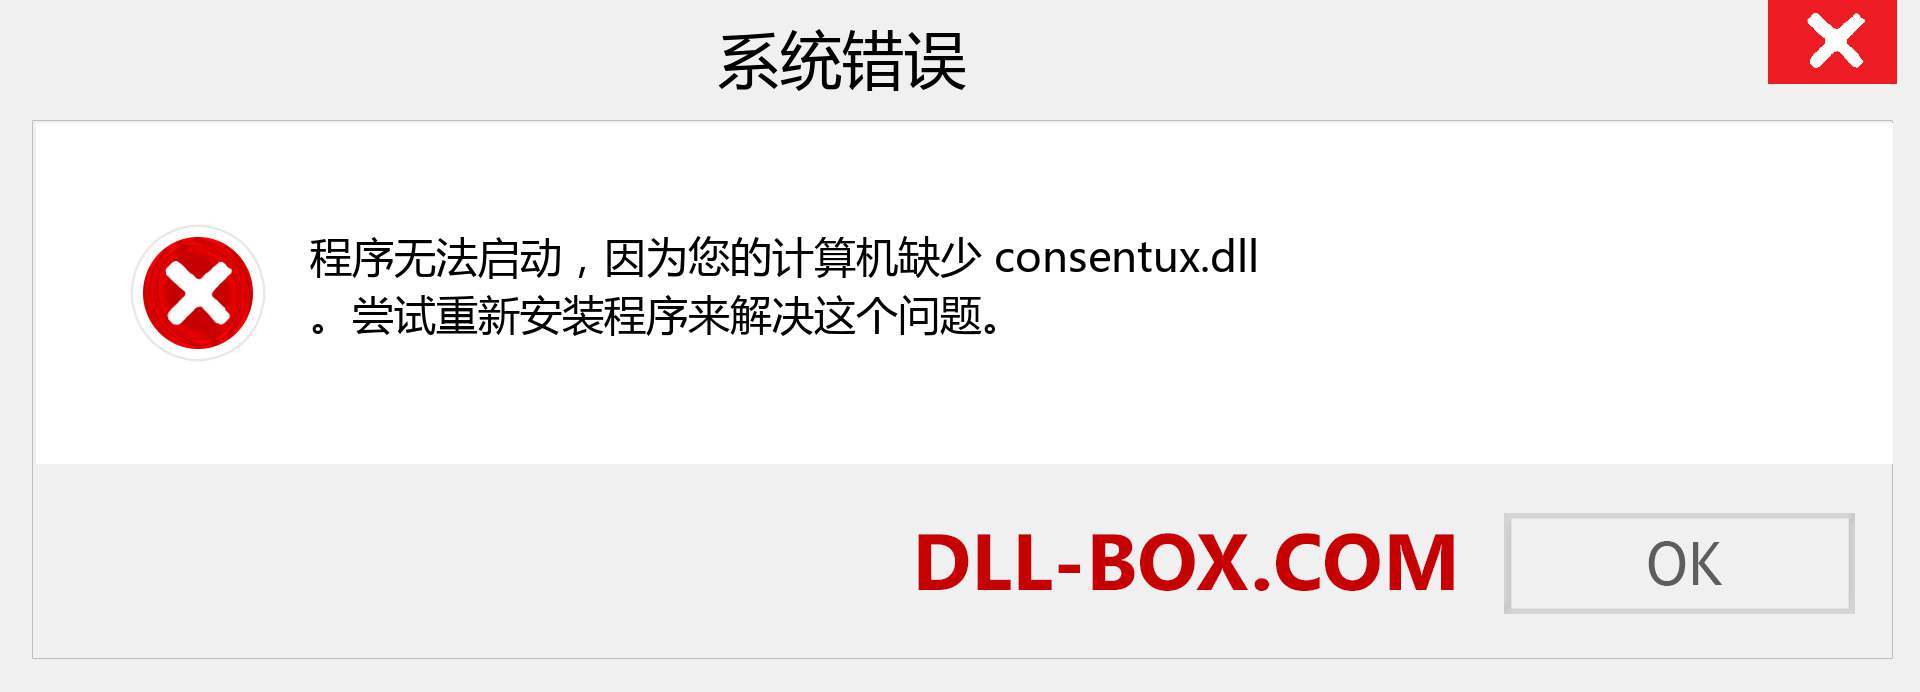 consentux.dll 文件丢失？。 适用于 Windows 7、8、10 的下载 - 修复 Windows、照片、图像上的 consentux dll 丢失错误